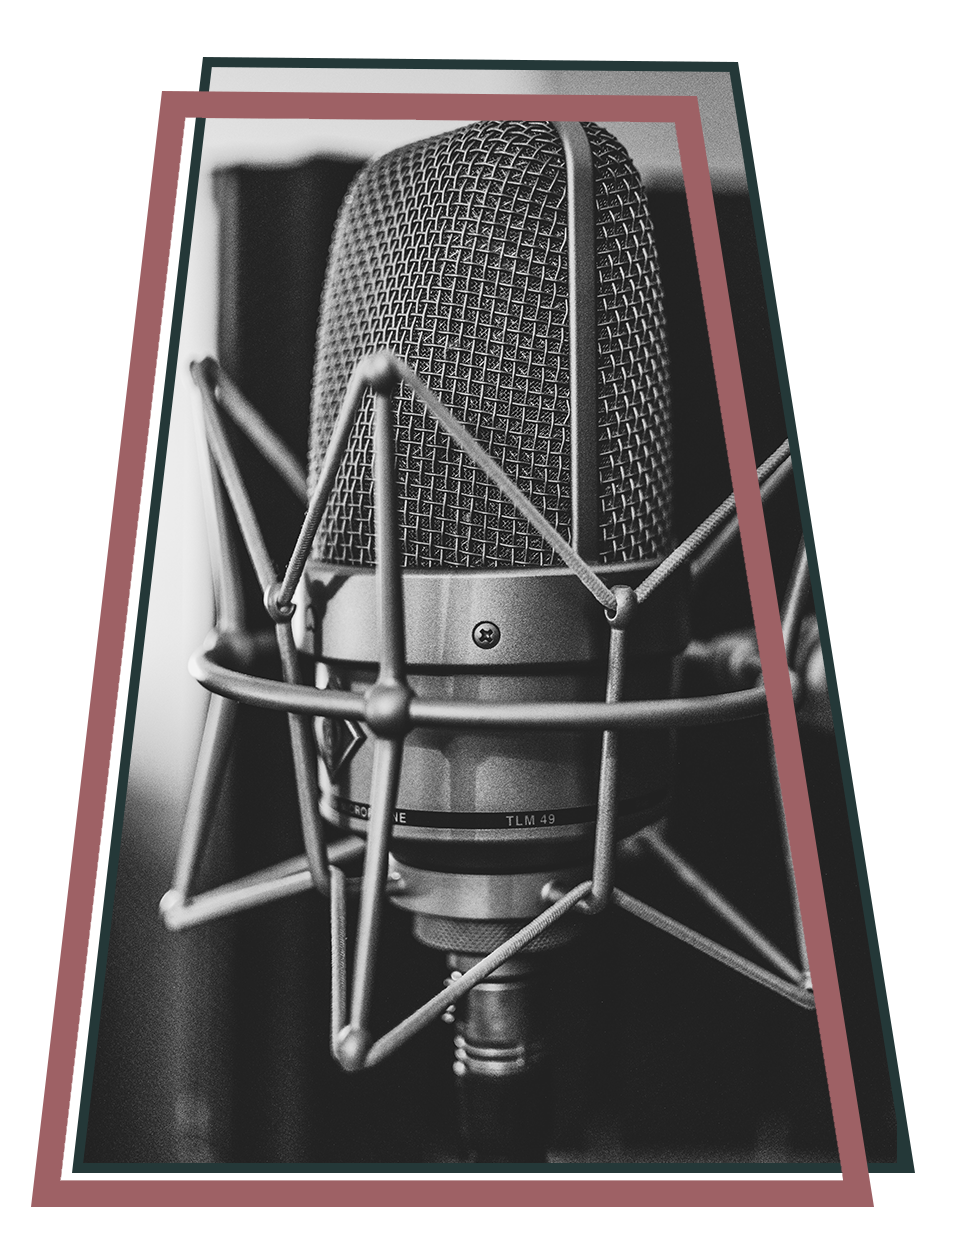 Indianapolis Studio Equipment Music Recording Licensing Rtrc